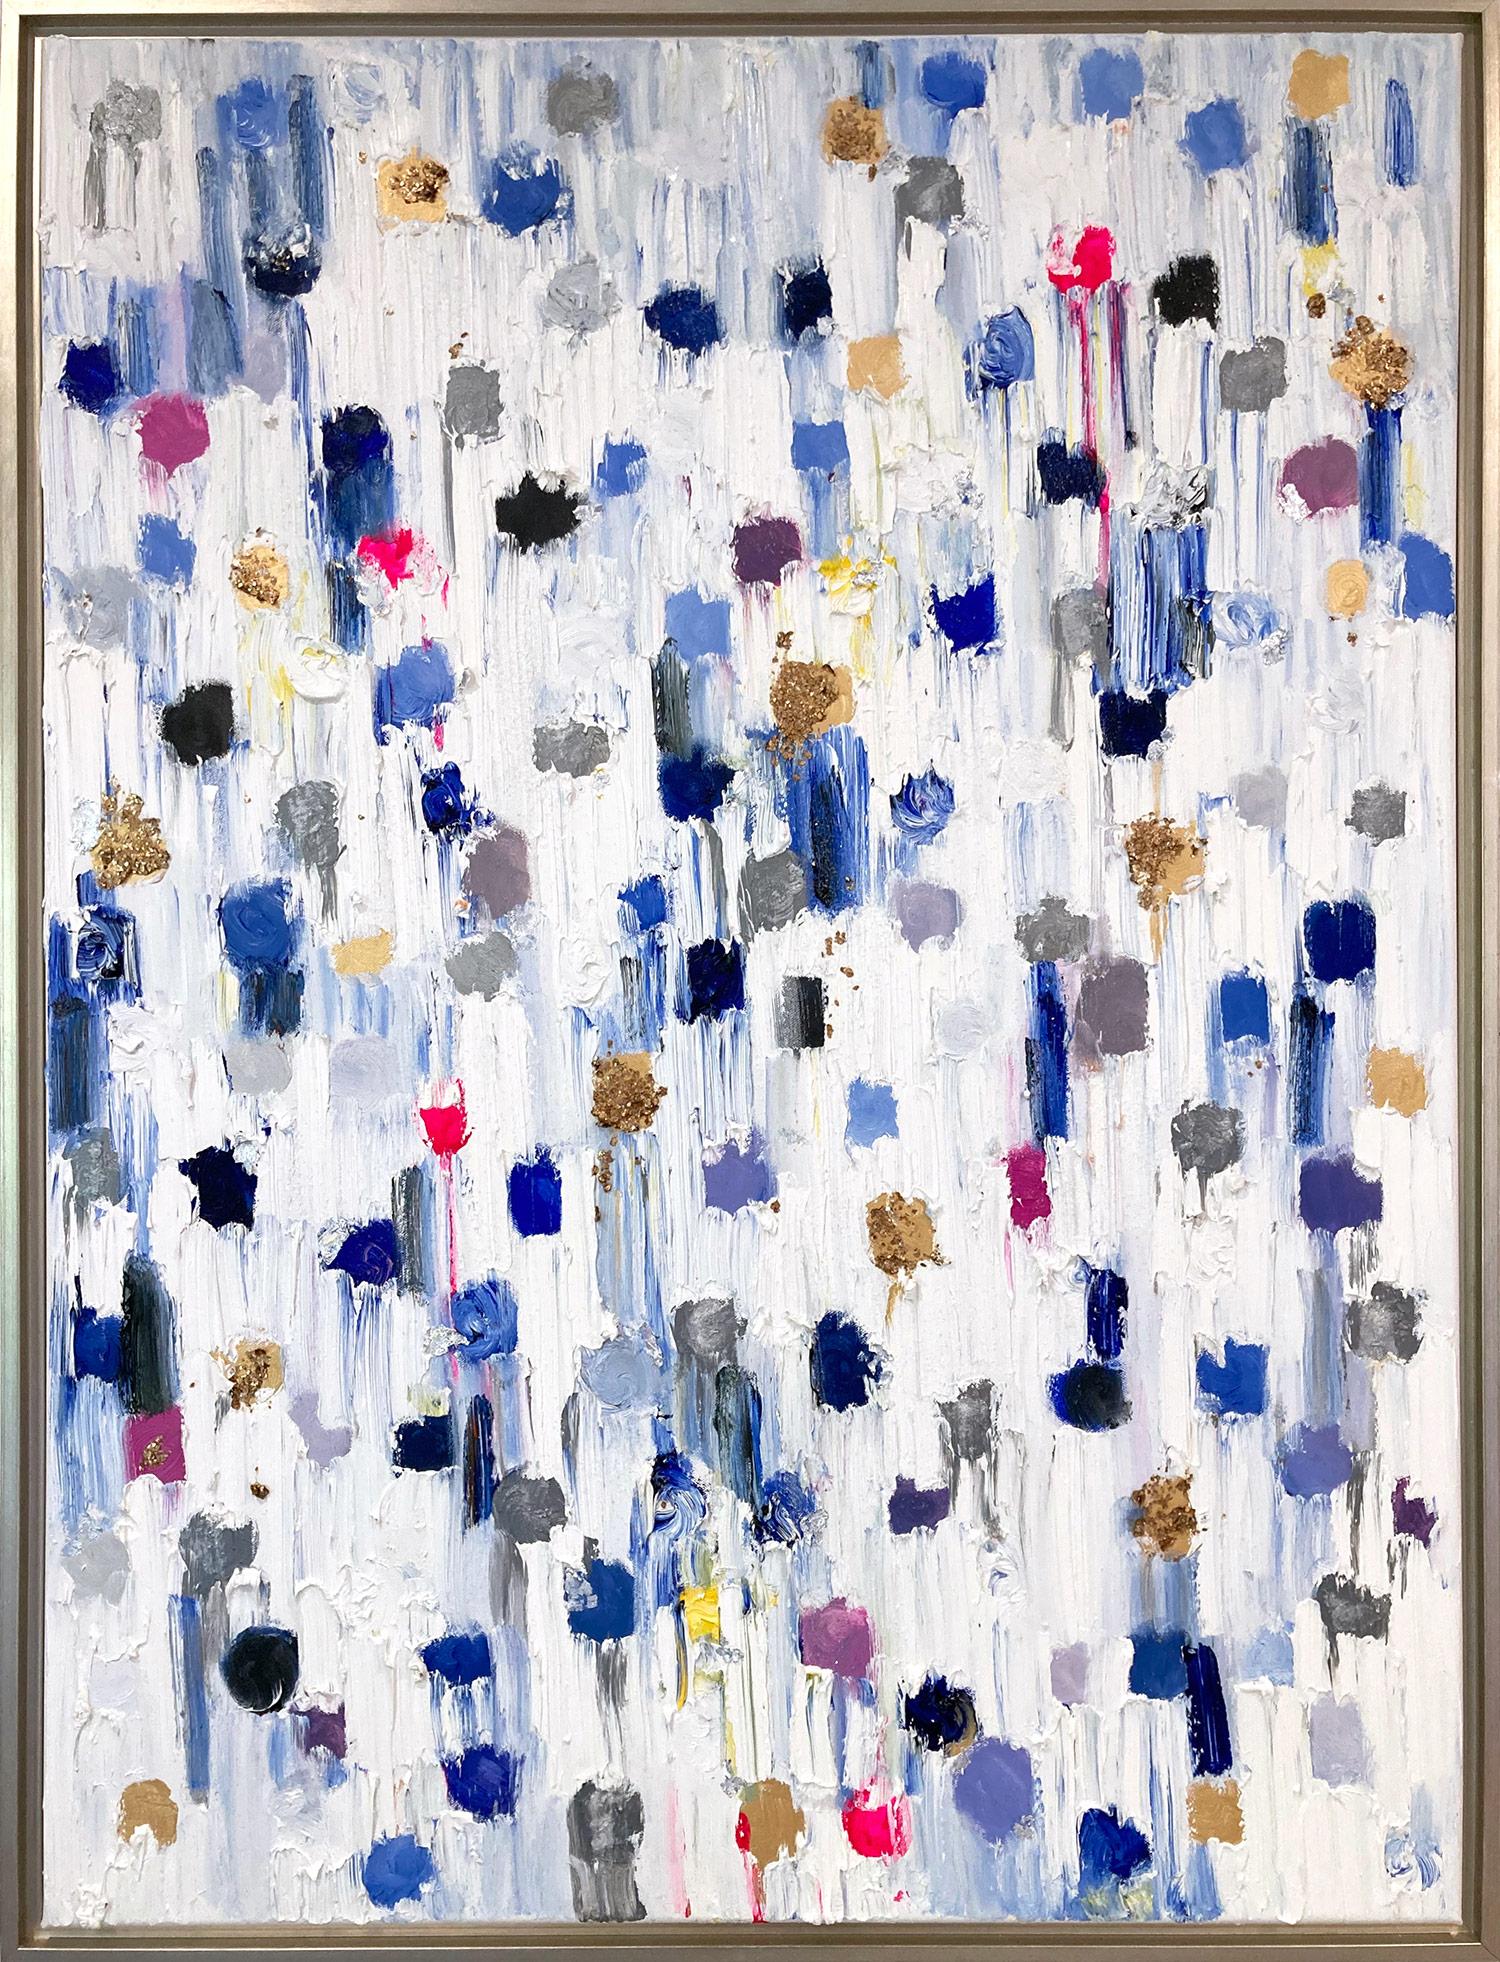 Abstract Painting Cindy Shaoul - "Dripping Dots - Montclair" Peinture à l'huile contemporaine colorée sur toile encadrée